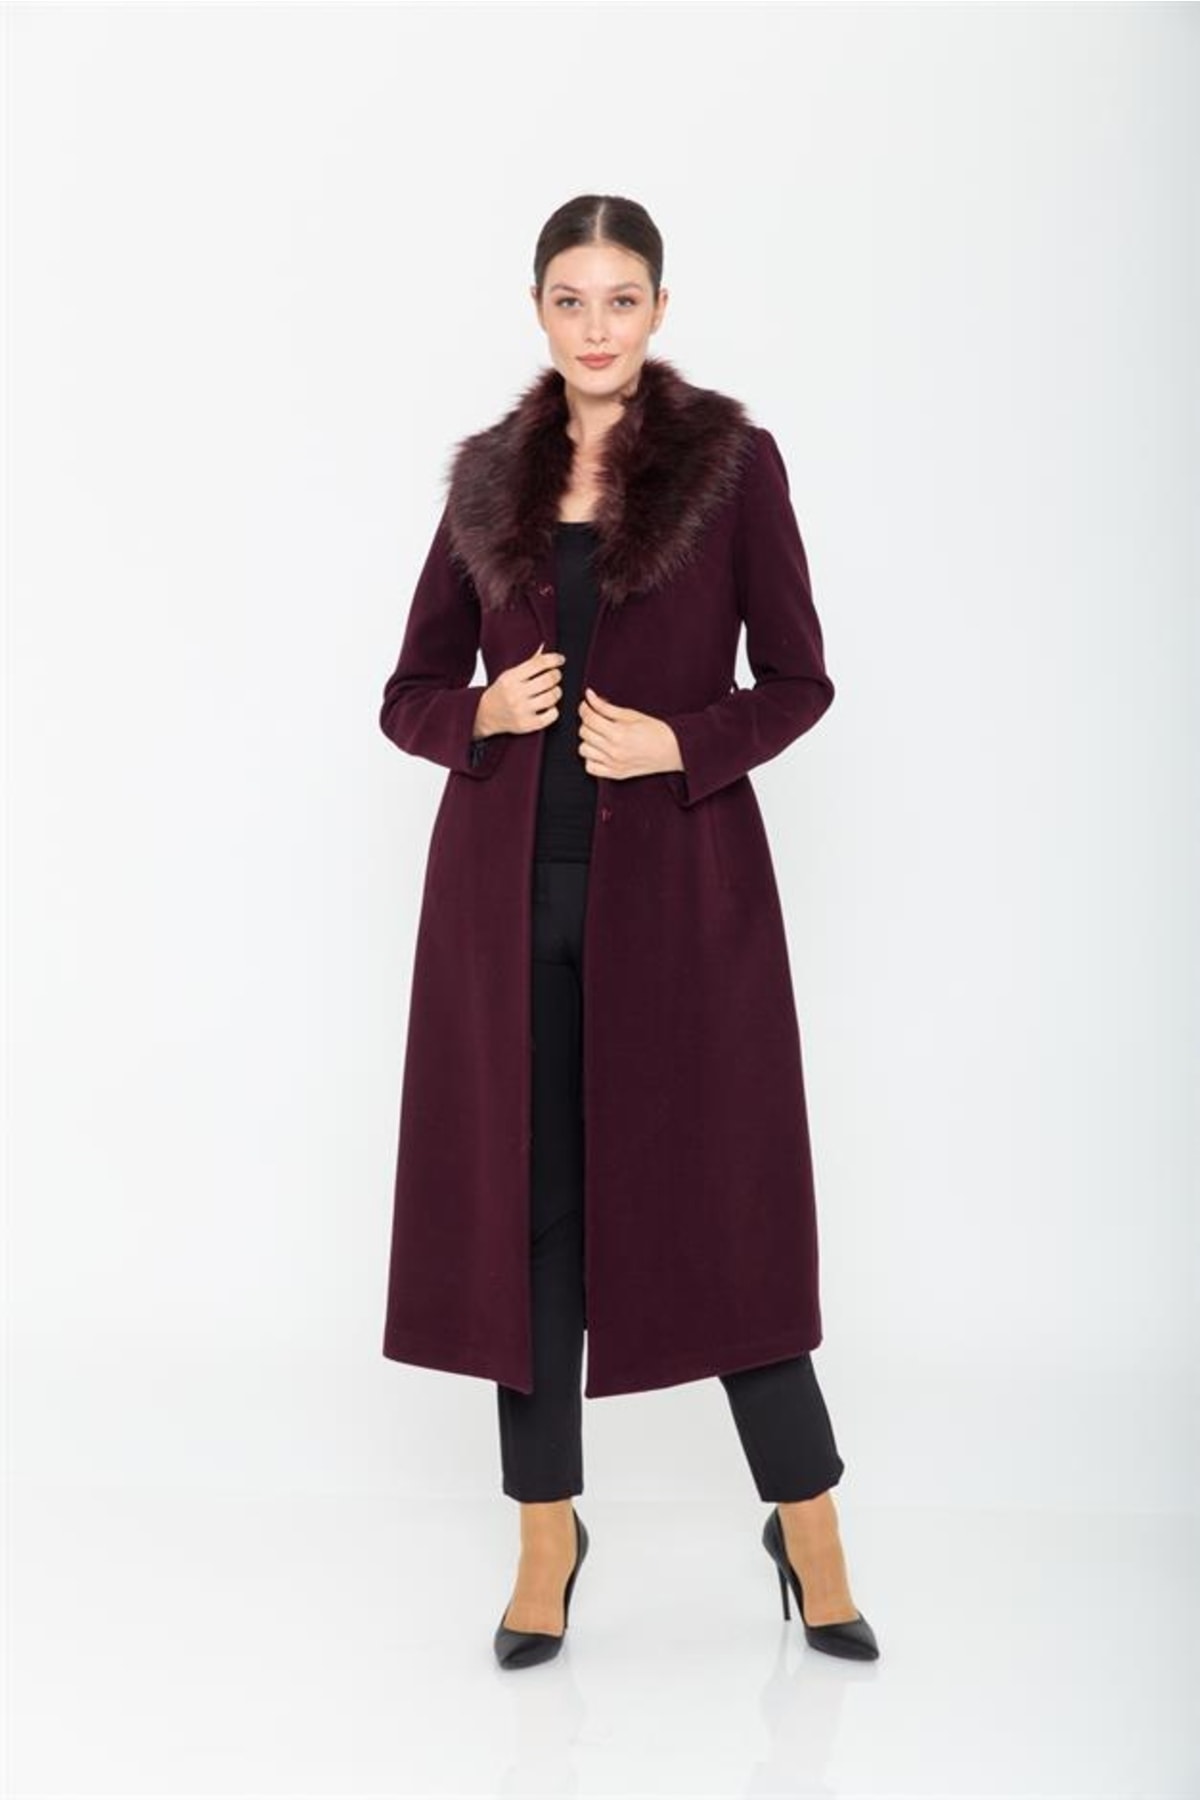 женское хлопковое пальто с большим меховым воротником свободного покроя средней длины m289 Пальто средней длины с меховым воротником на талии сливовый 3397 Concept., фиолетовый